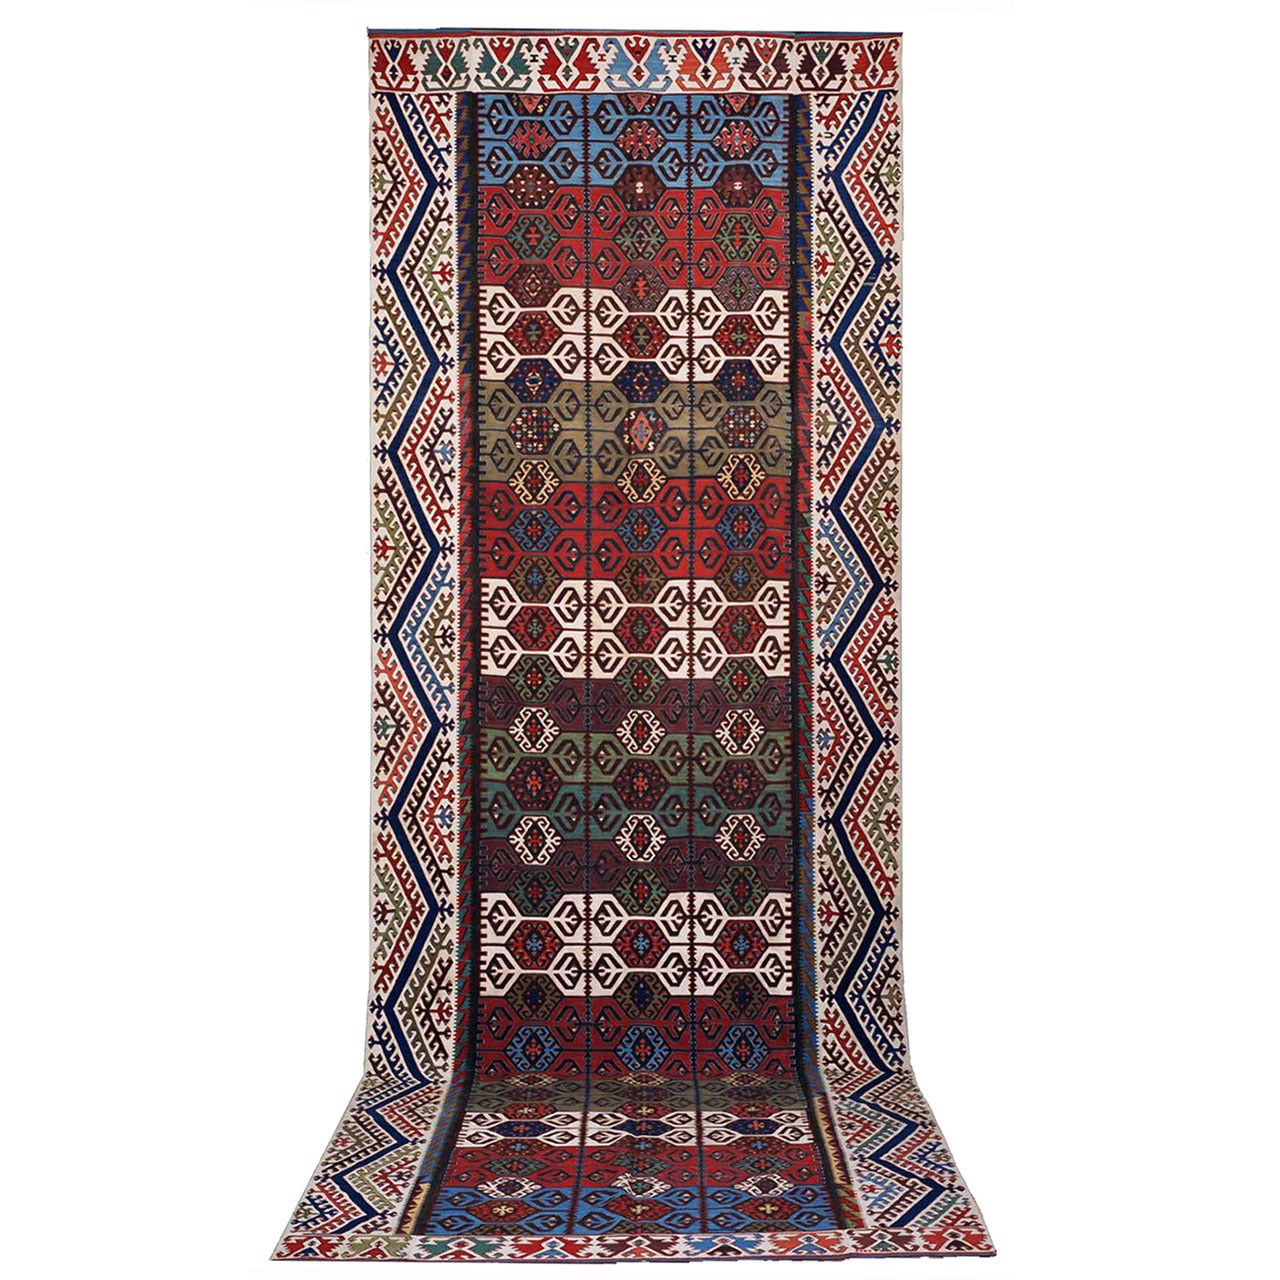 Impressive Antique Konya Kilim Rug For Sale